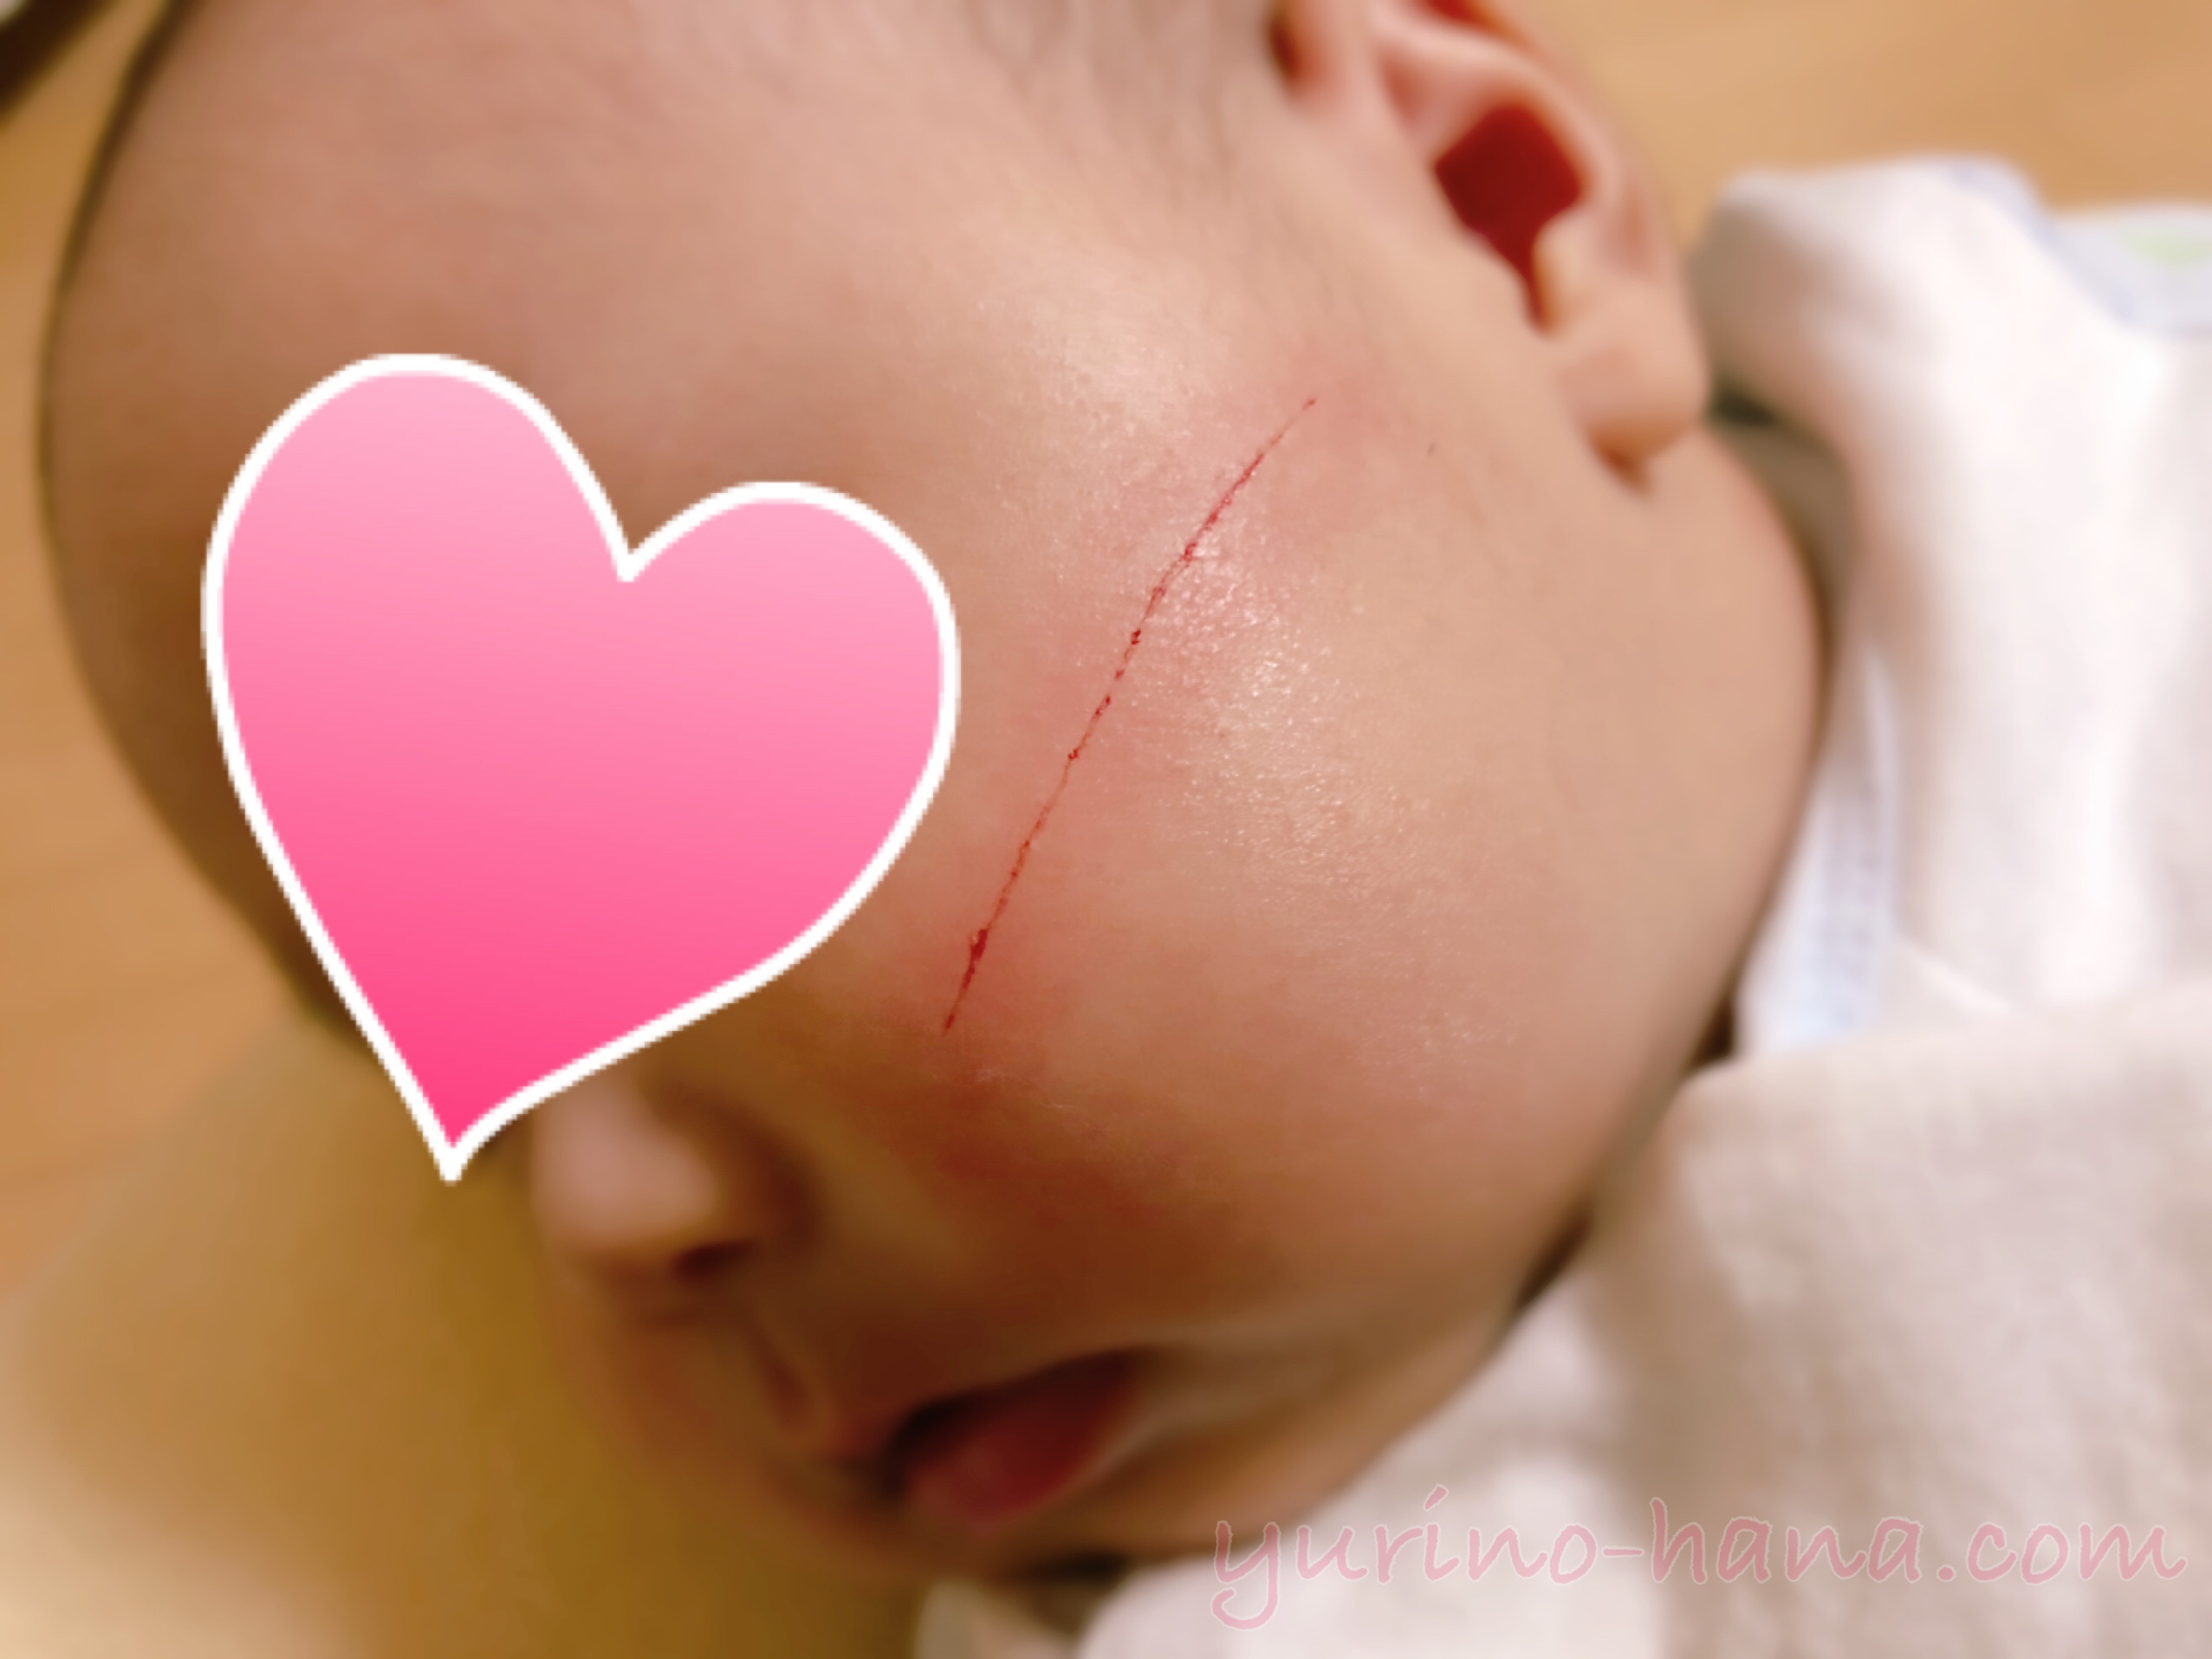 赤ちゃんの顔にできたひっかき傷 2 No 403278 写真素材なら 写真ac 無料 フリー ダウンロードok